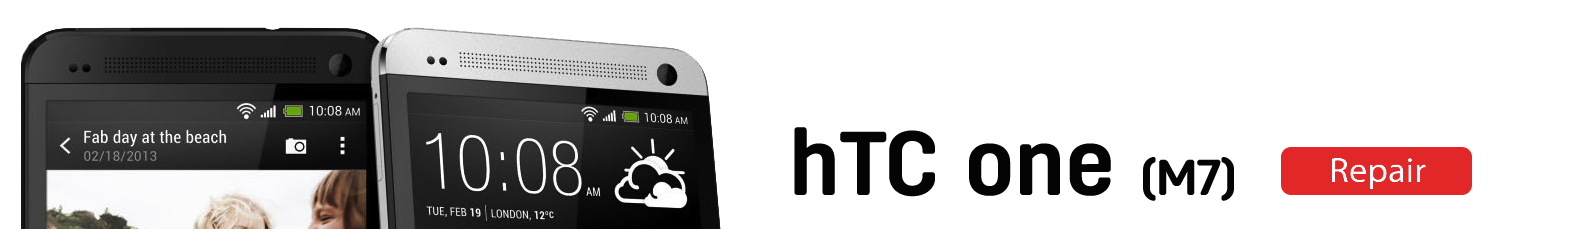 htc 1v2  HTC One M7 Repairs